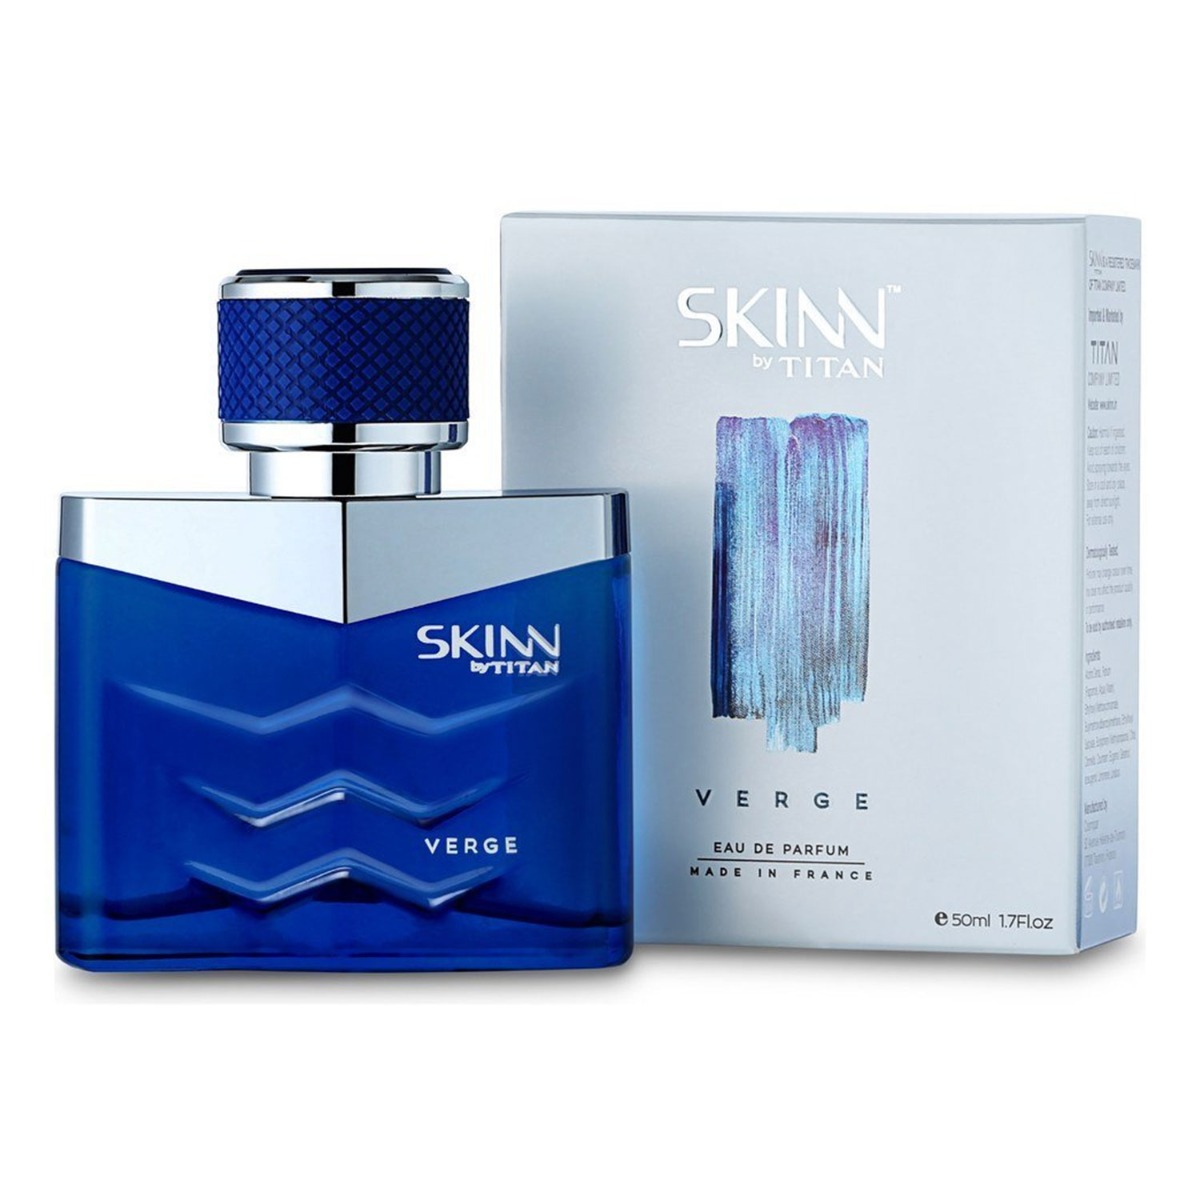 Skinn by Titan Men's Eau de Parfum, Verge, 50ml